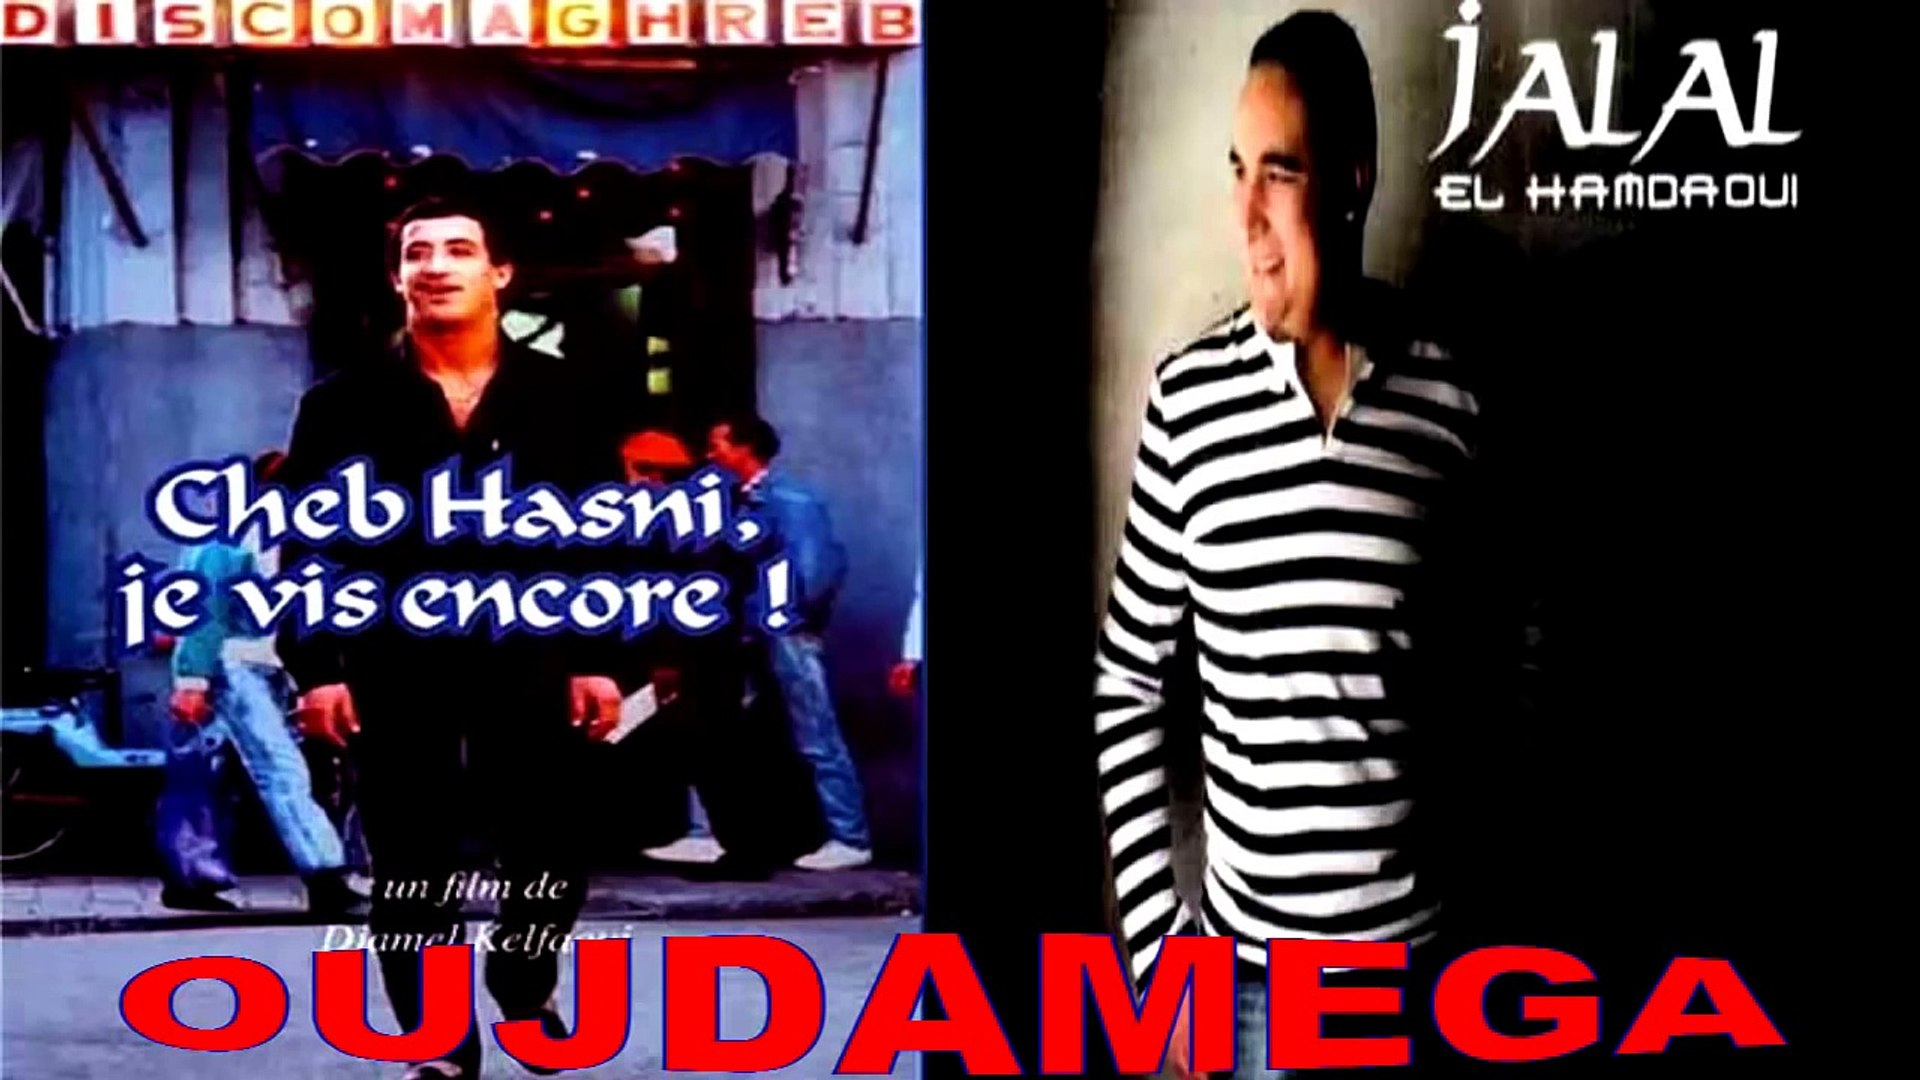 ღ♥ღ HOMMAGE CHEB HASNI - JALAL EL HAMDAOUI 2015 ღ♥ღ - Vidéo Dailymotion